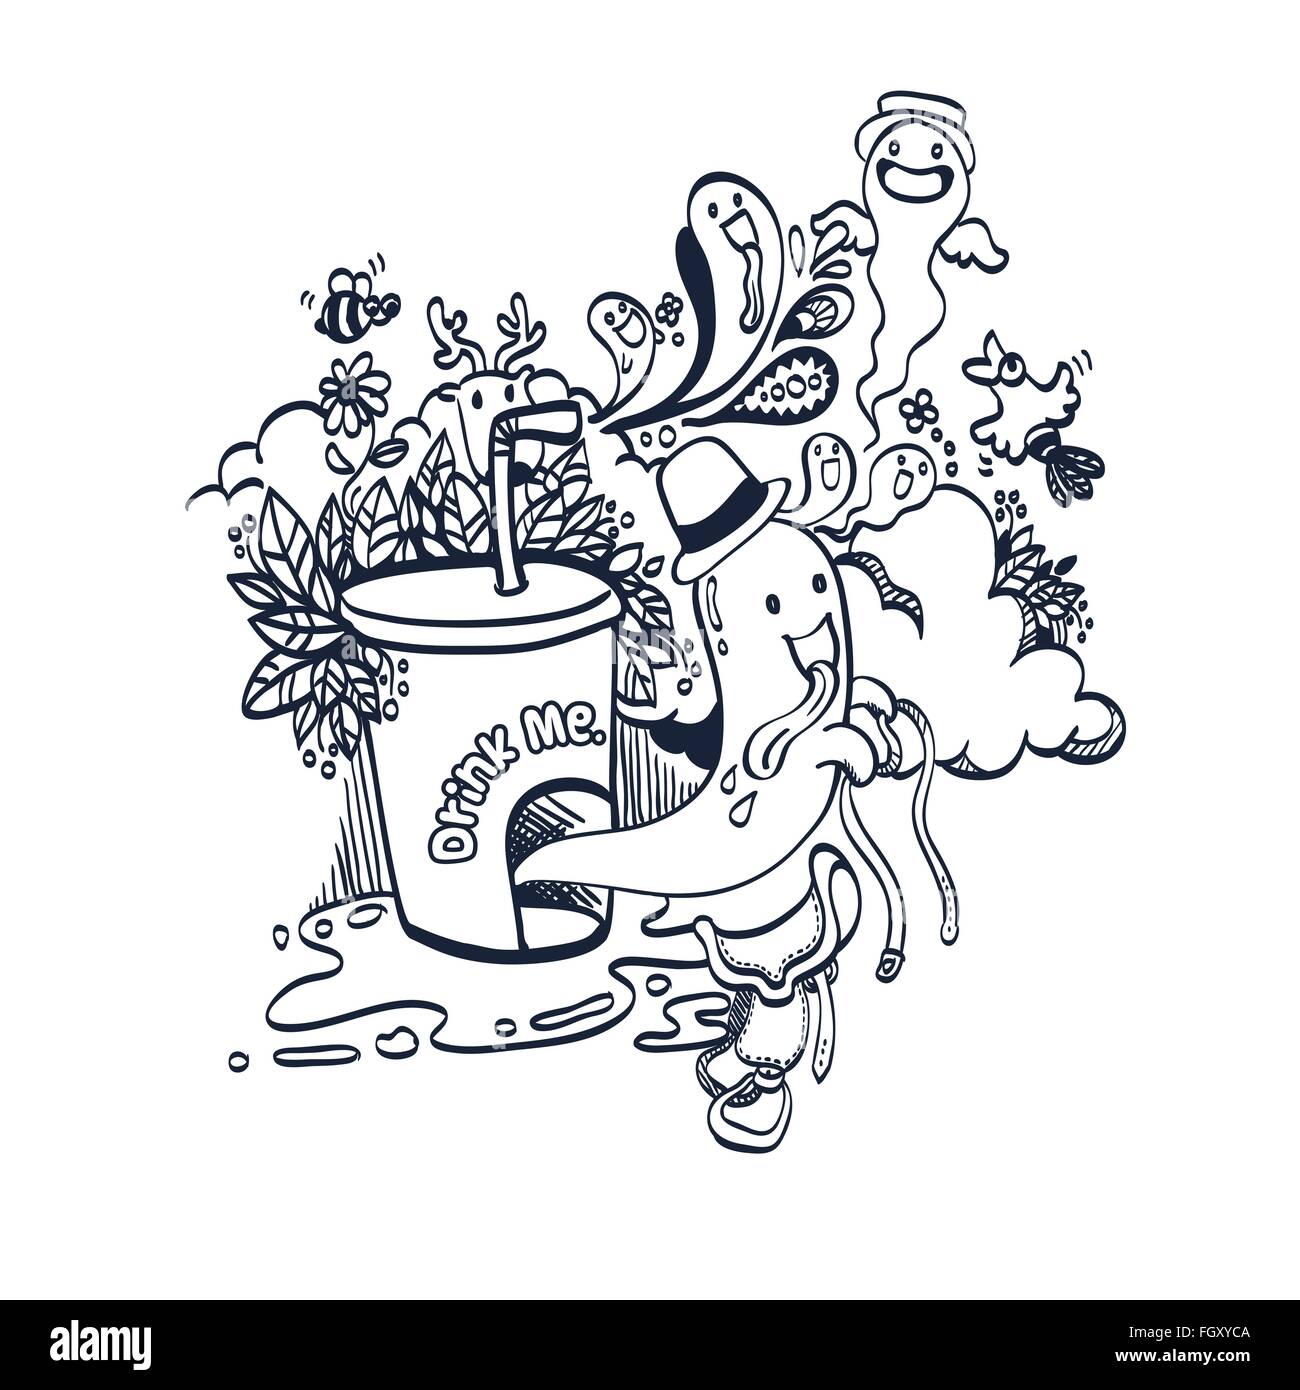 Vektor-Illustration von Doodle lustige Geist des Getränks, handgezeichnete zum Ausmalen Stock Vektor